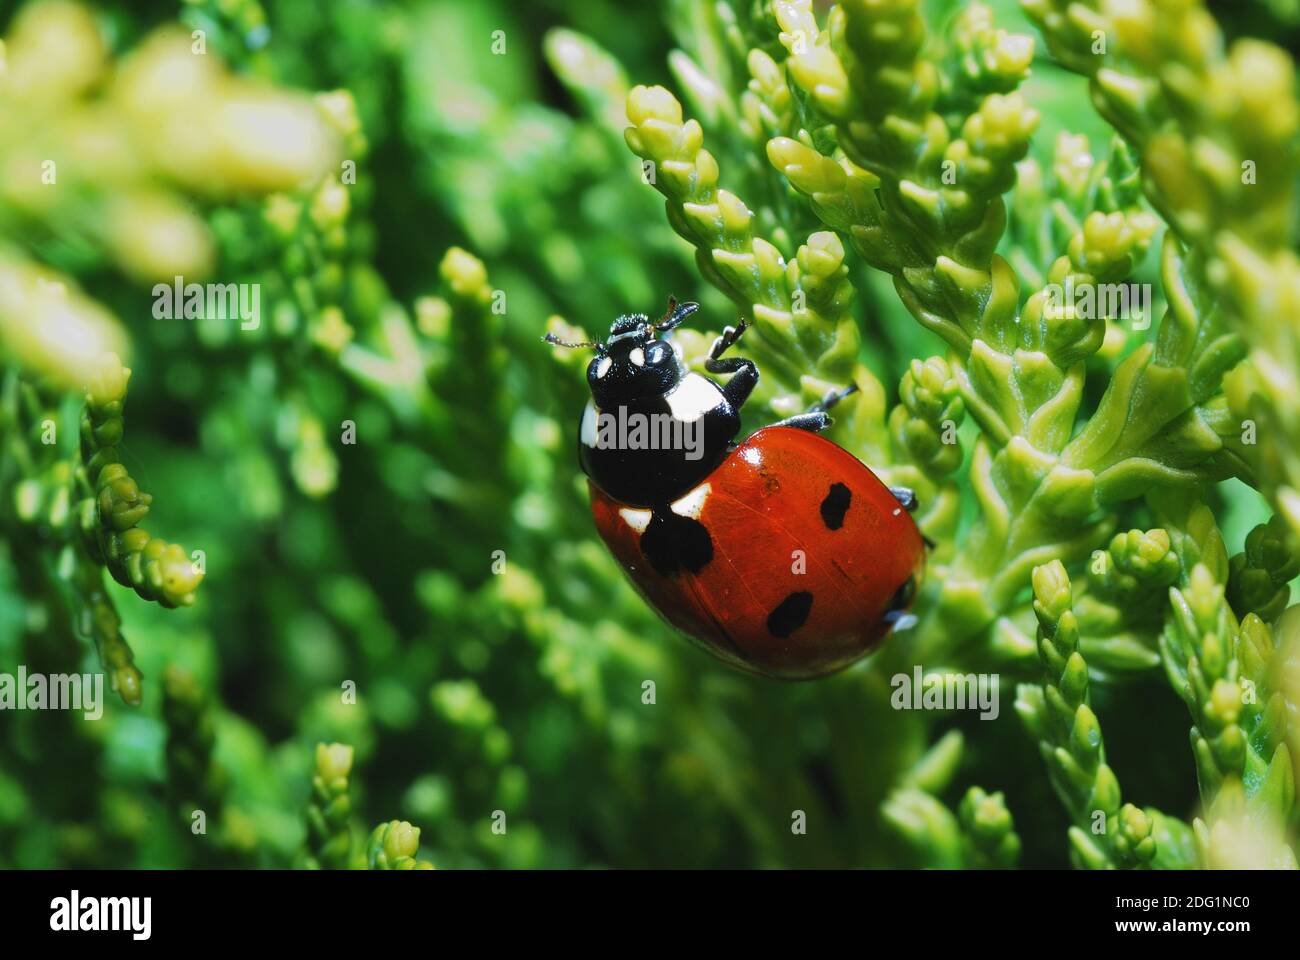 Ladybug on thuje Stock Photo